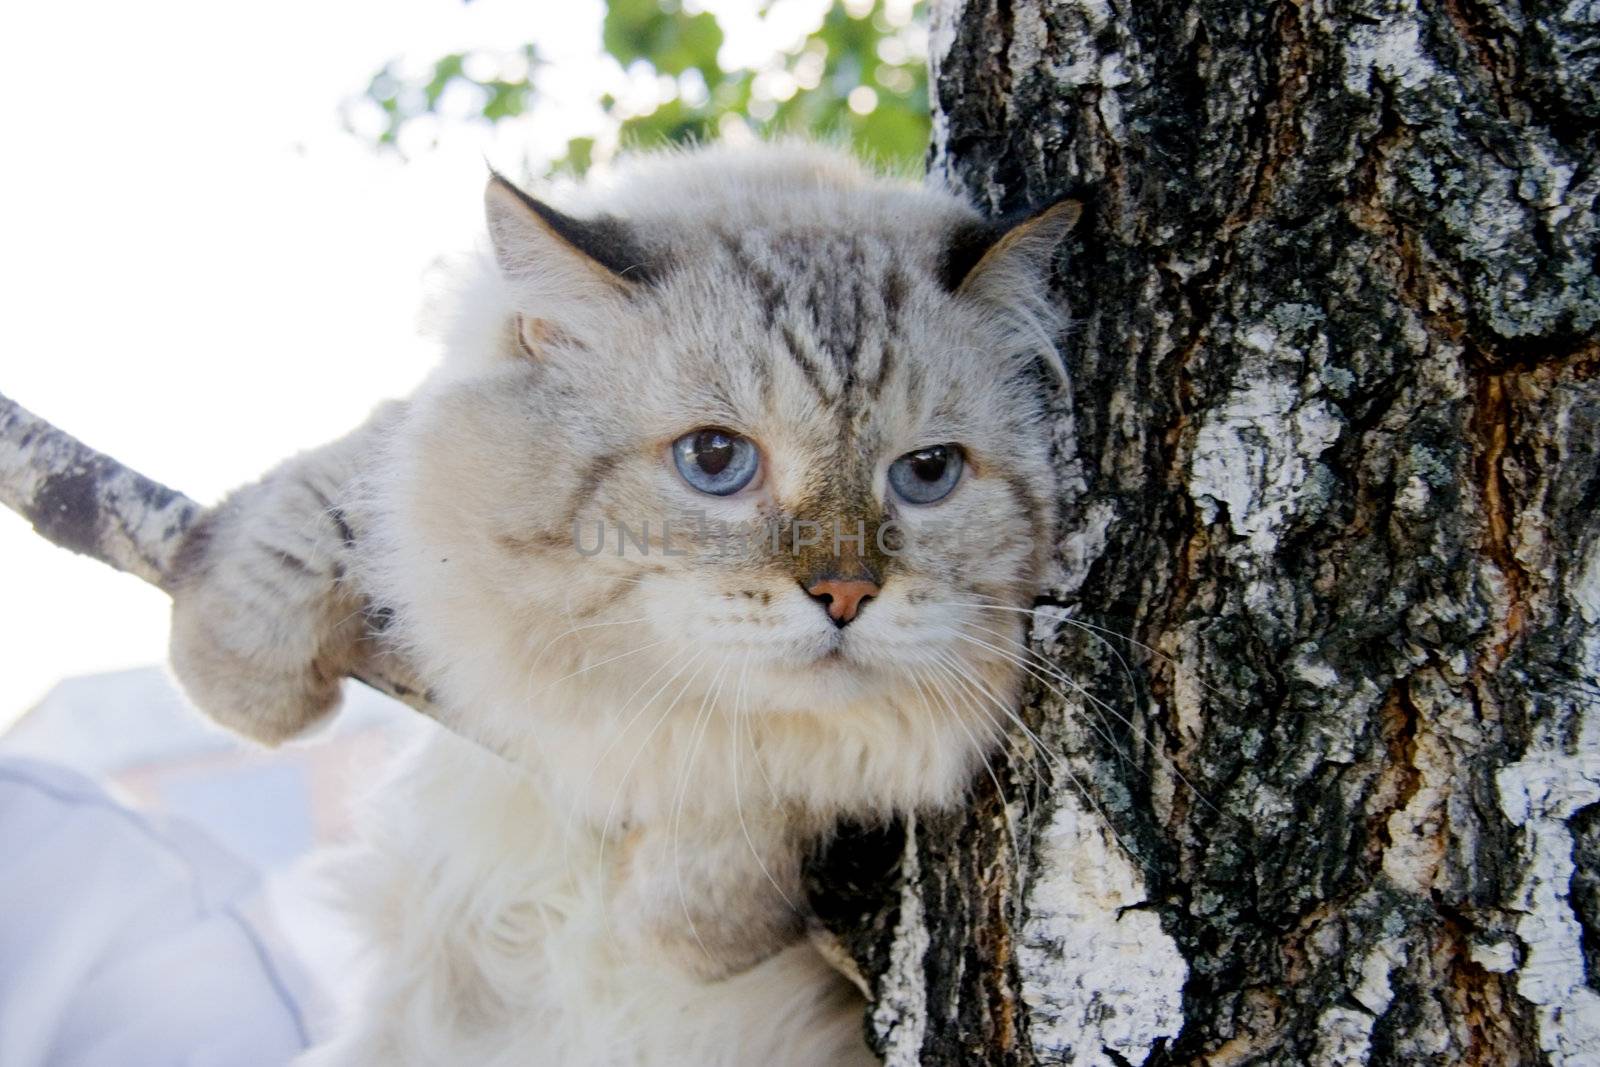 Frightened cat on the twig of tree by Kudryashka